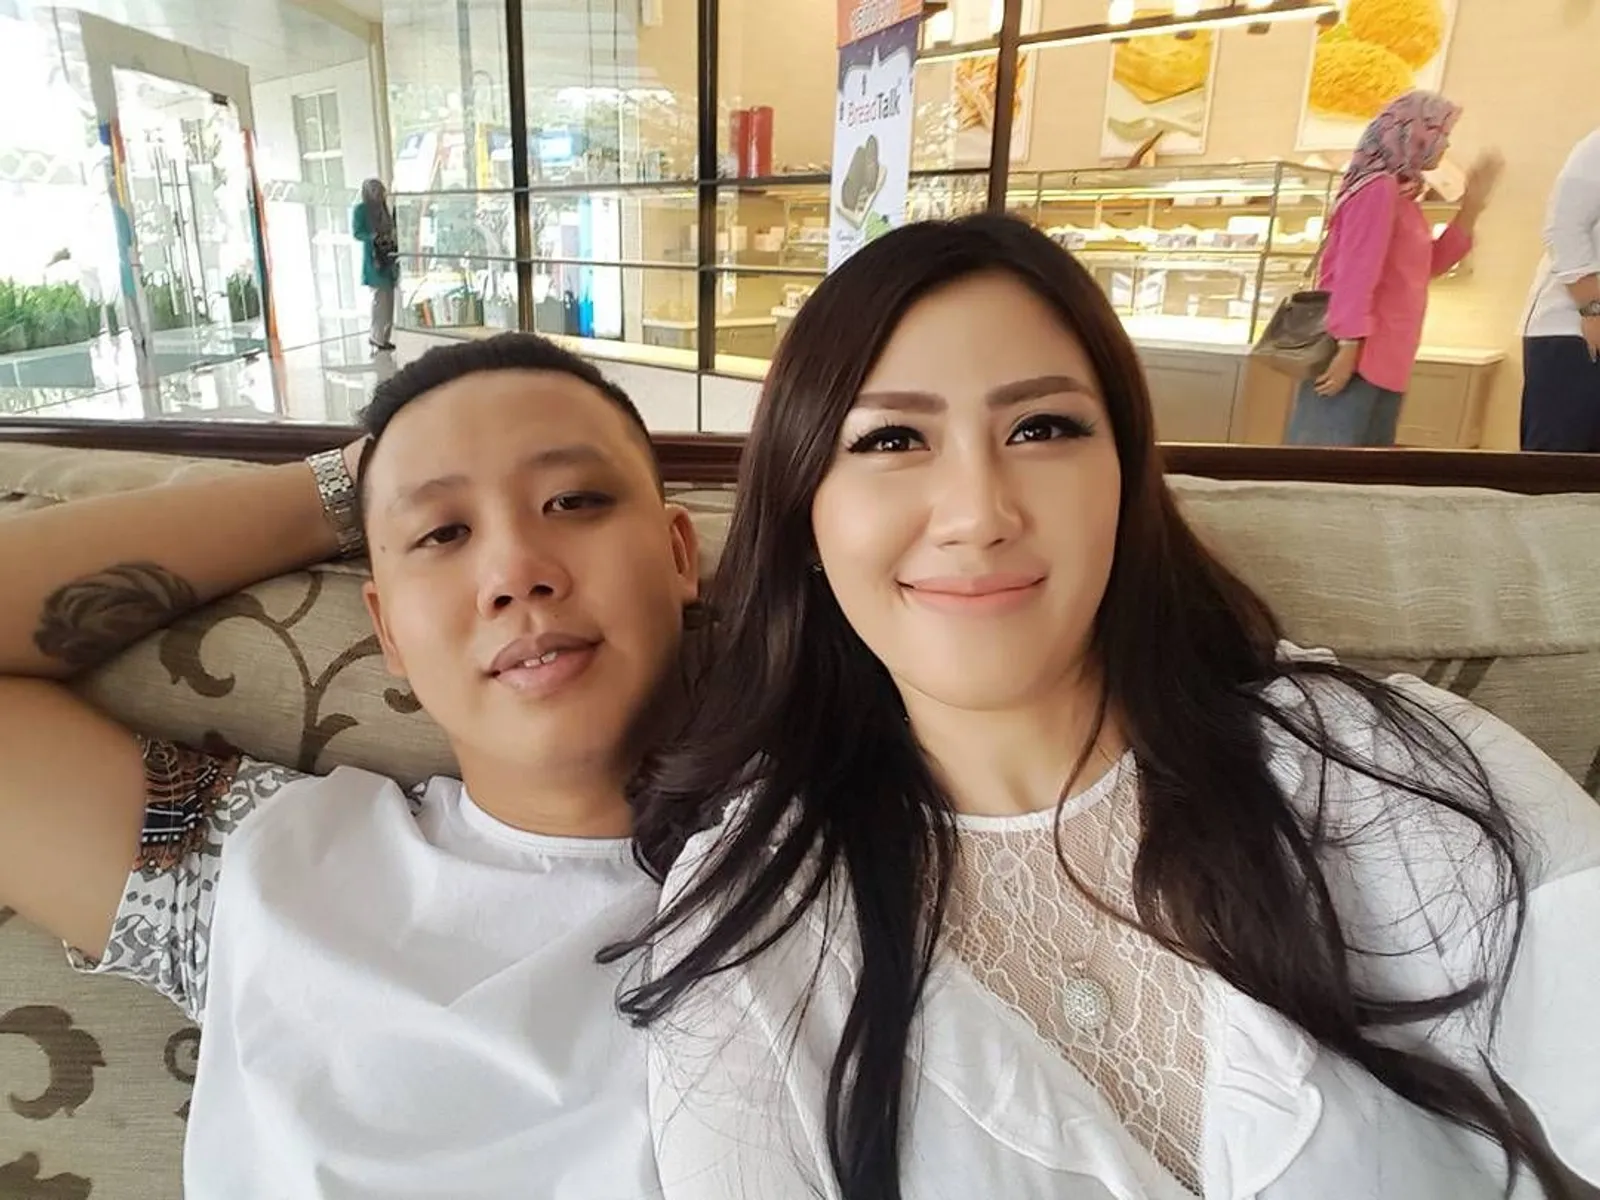 Unik, Pernikahan 5 Seleb Indonesia Ini Viral di Media Luar Negeri